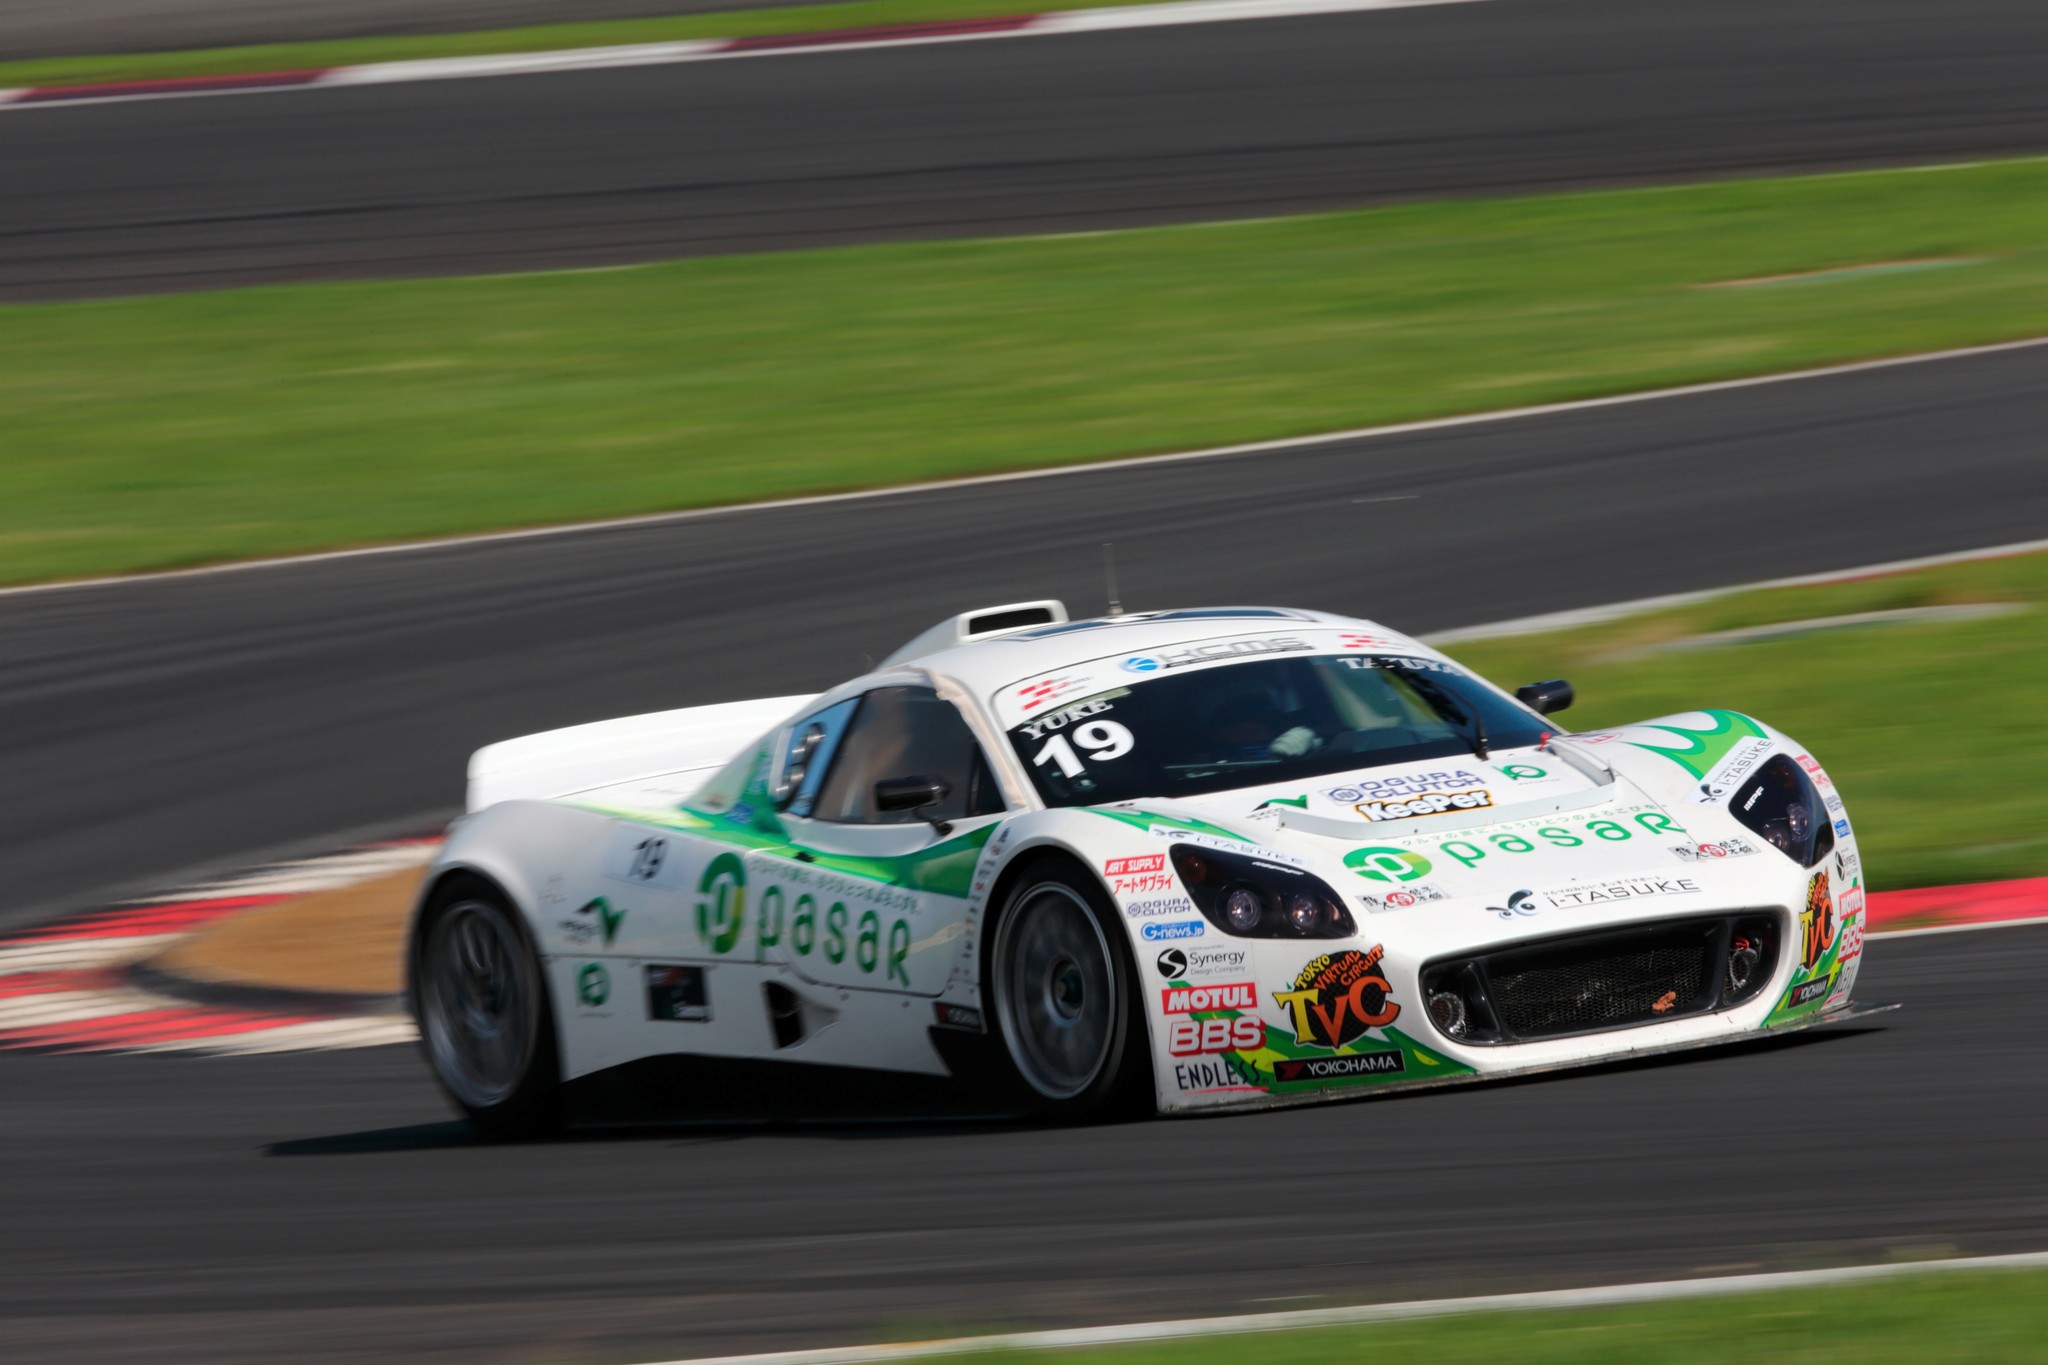 モータースポーツ 15インタープロトシリーズ 特別戦 2時間セミ耐久レースにpasarレーシングカーが出場 東日本高速道路株式会社のプレスリリース